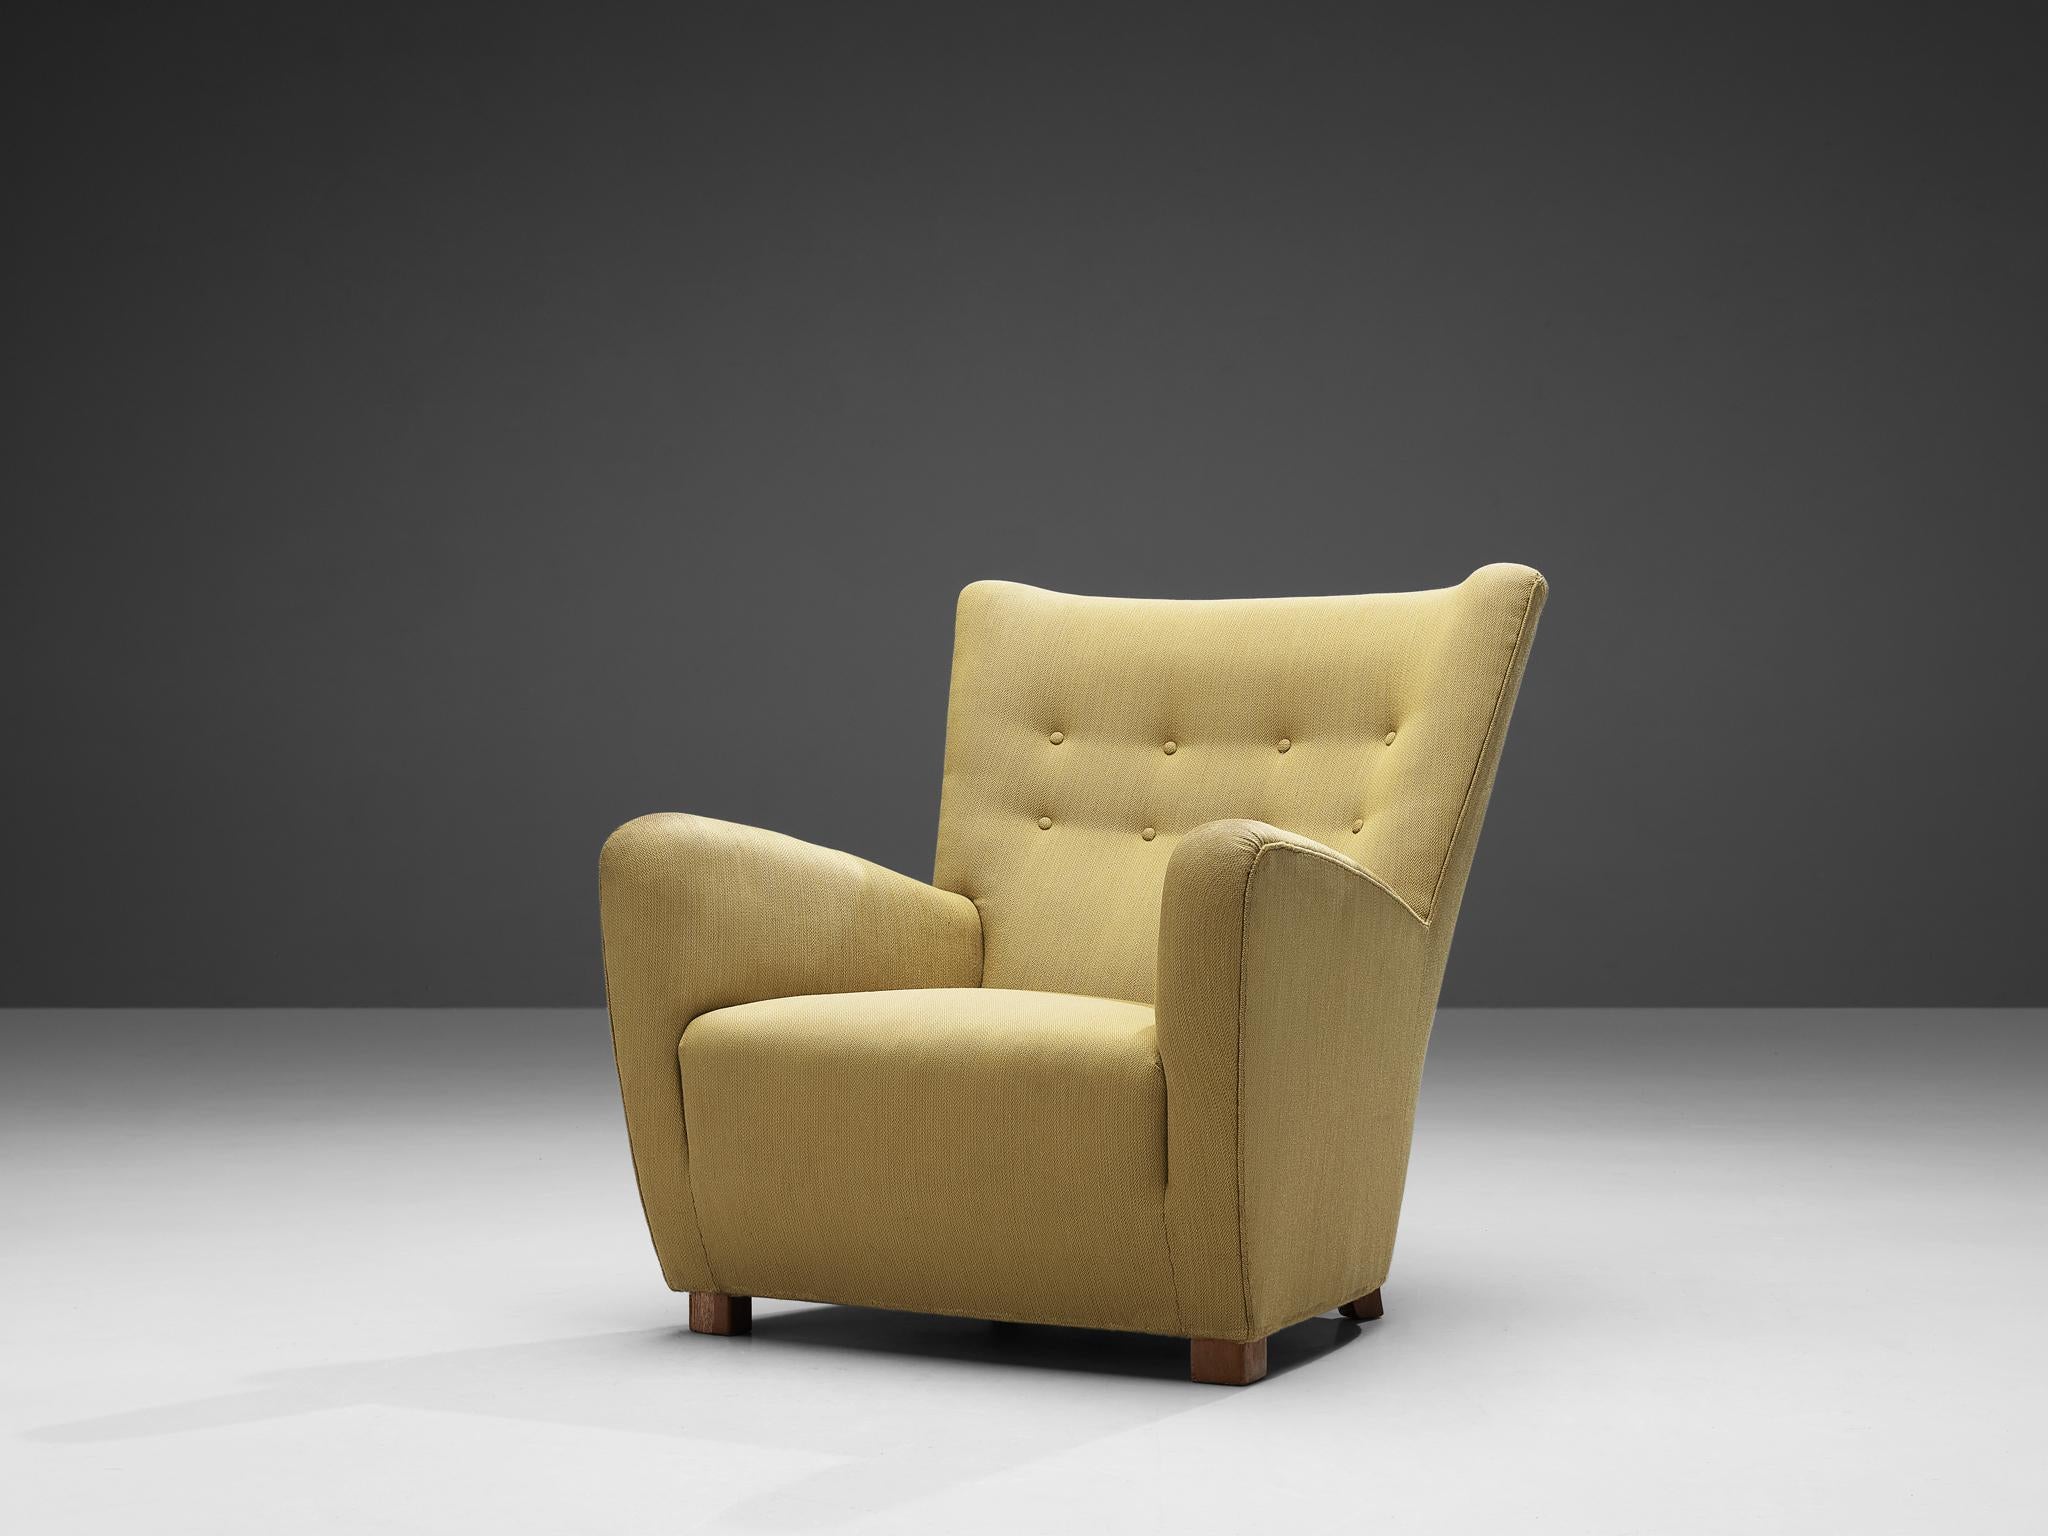 Sessel, Buche gebeizt, Stoff, Dänemark, 1950er Jahre

Dieser Sessel mit seinen weichen Kanten, den getufteten Knöpfen und den robusten Formen ist typisch für das Design der fünfziger Jahre. Die imposante, breite Rückenlehne sorgt für ein